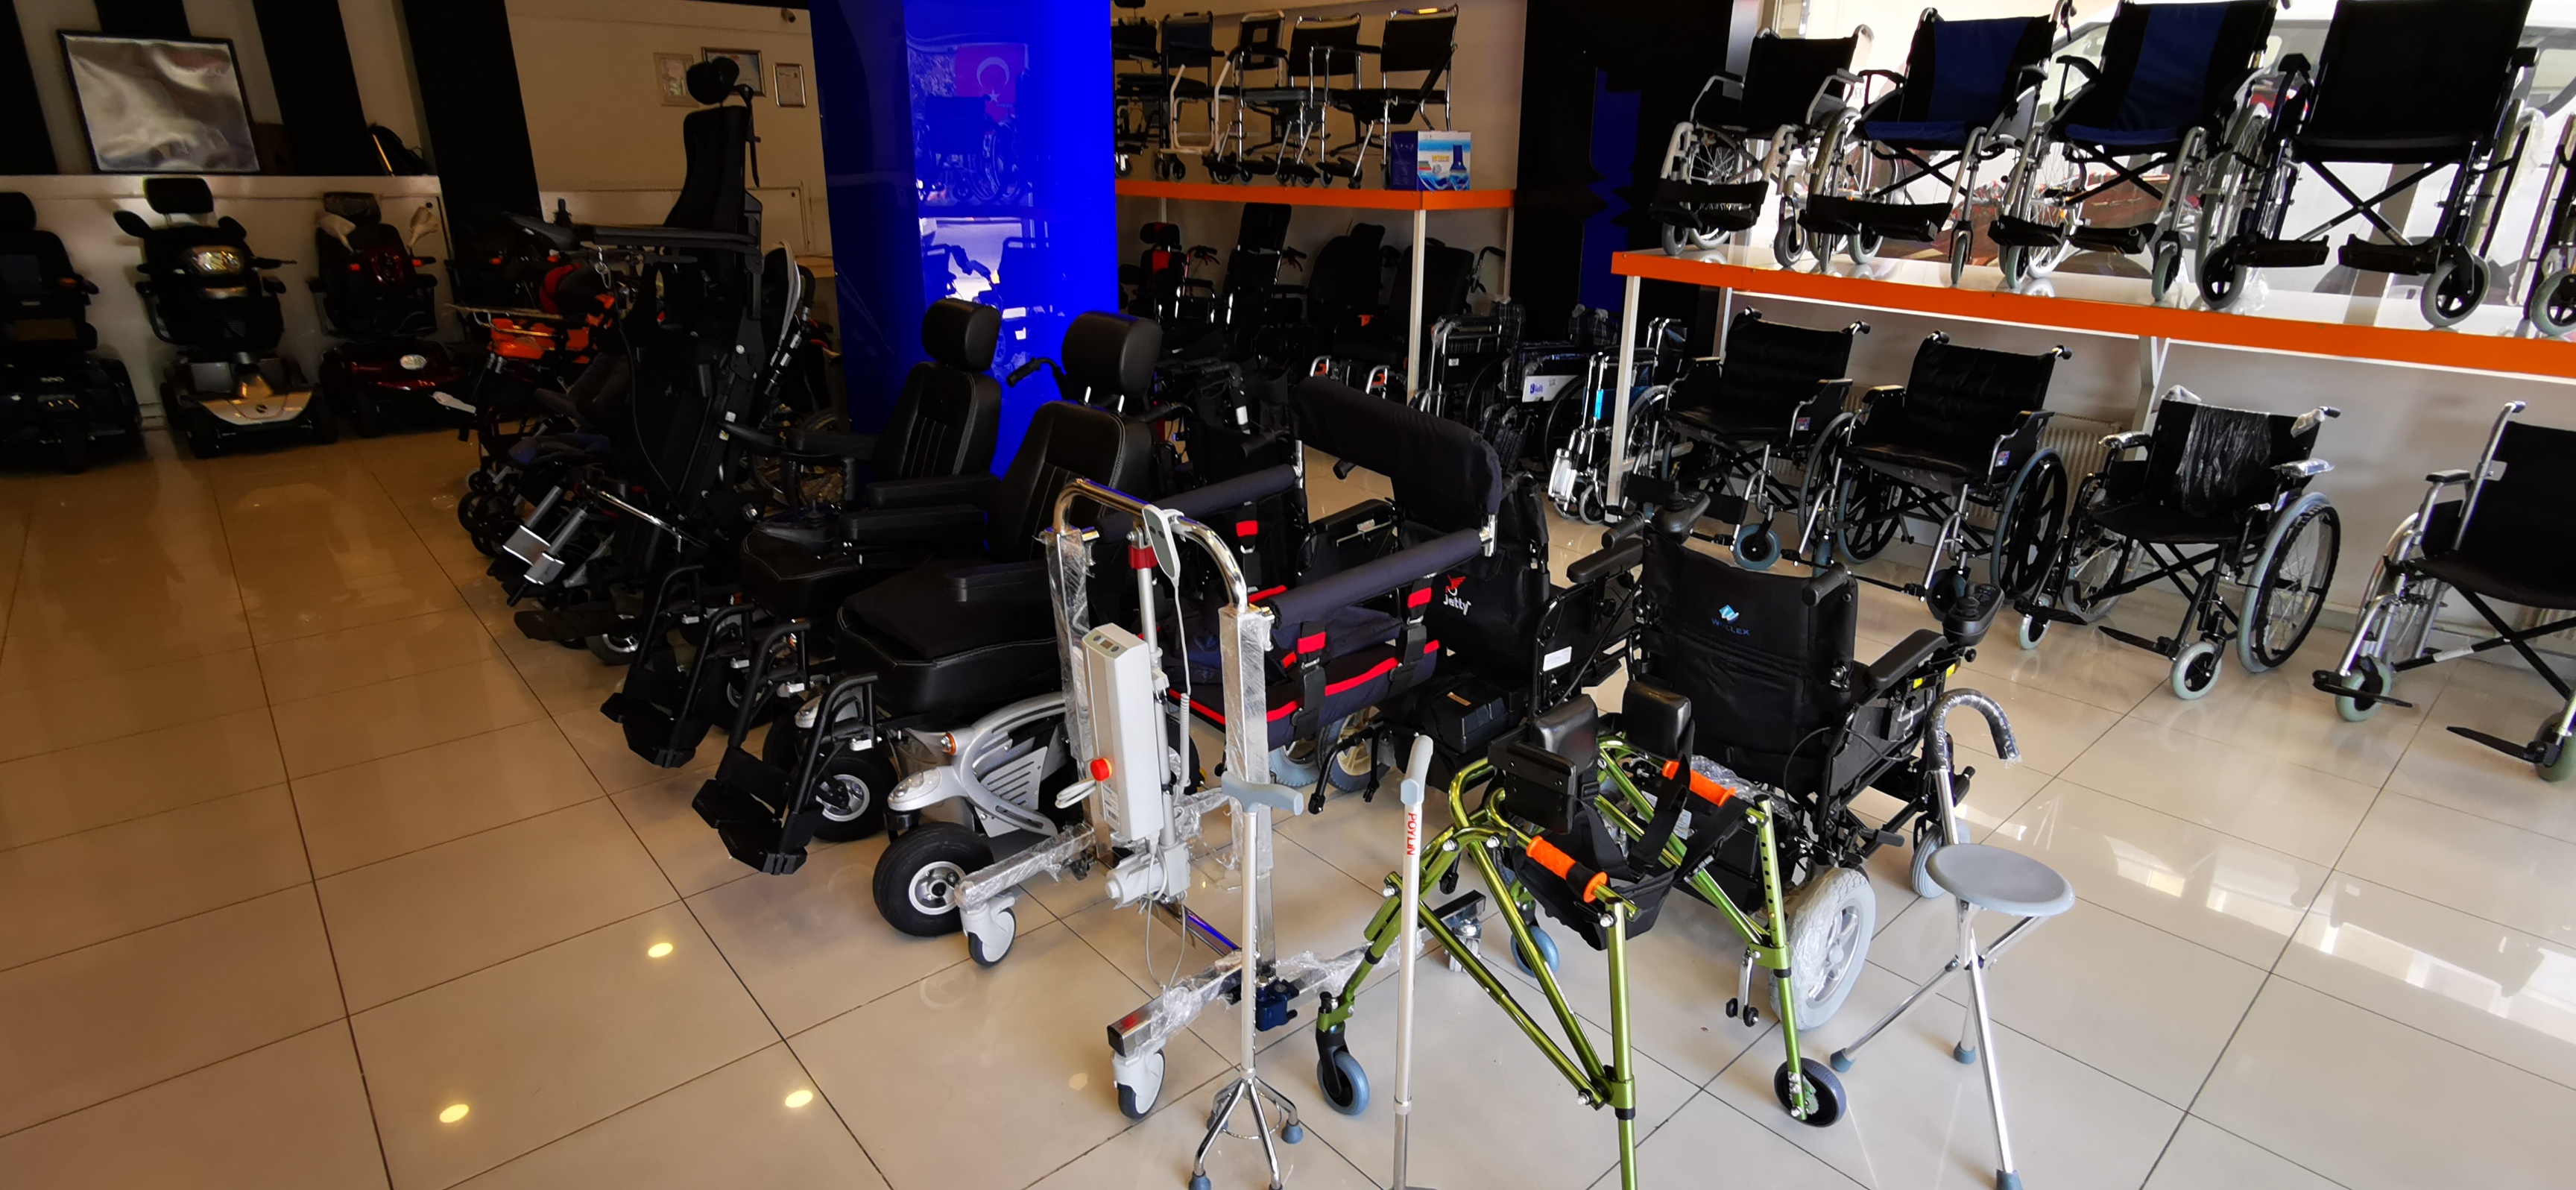 tekerlekli sandalye dünyası satış mağazası